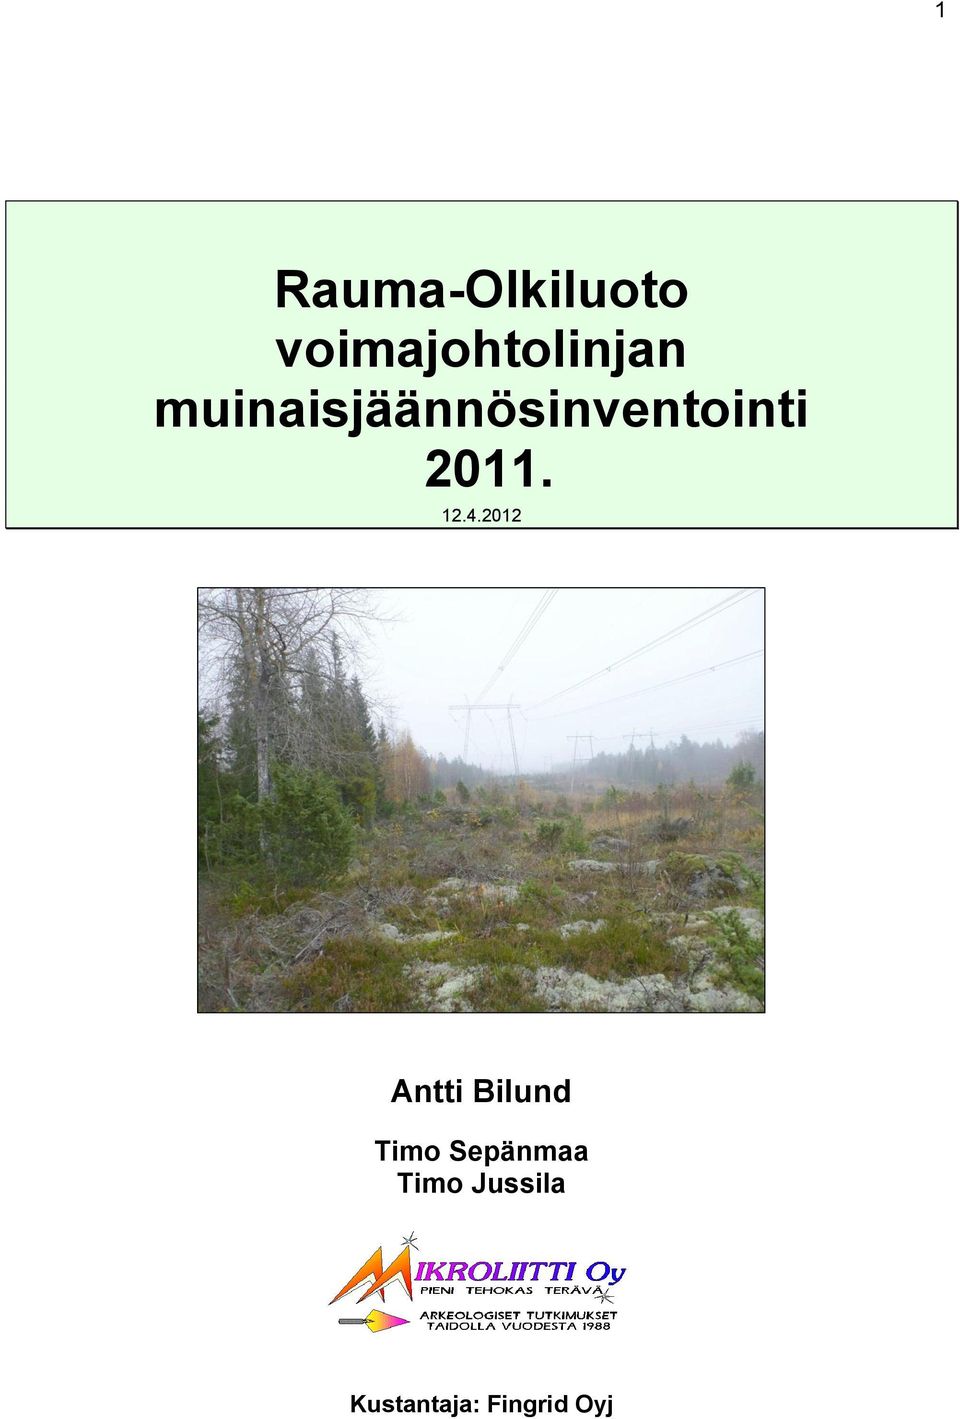 4.2012 Antti Bilund Timo Sepänmaa